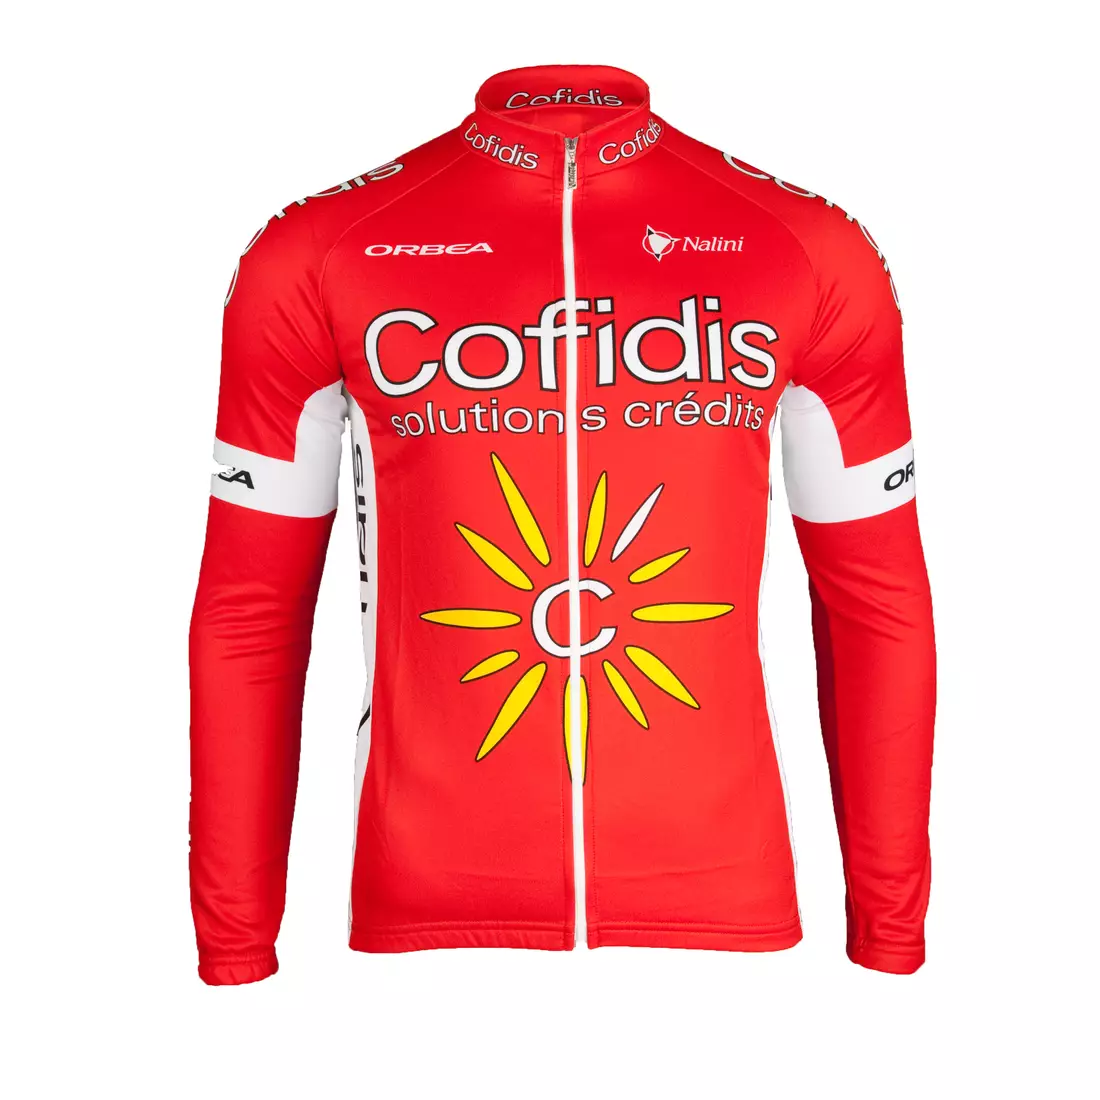 COFIDIS 2015 cycling sweatshirt